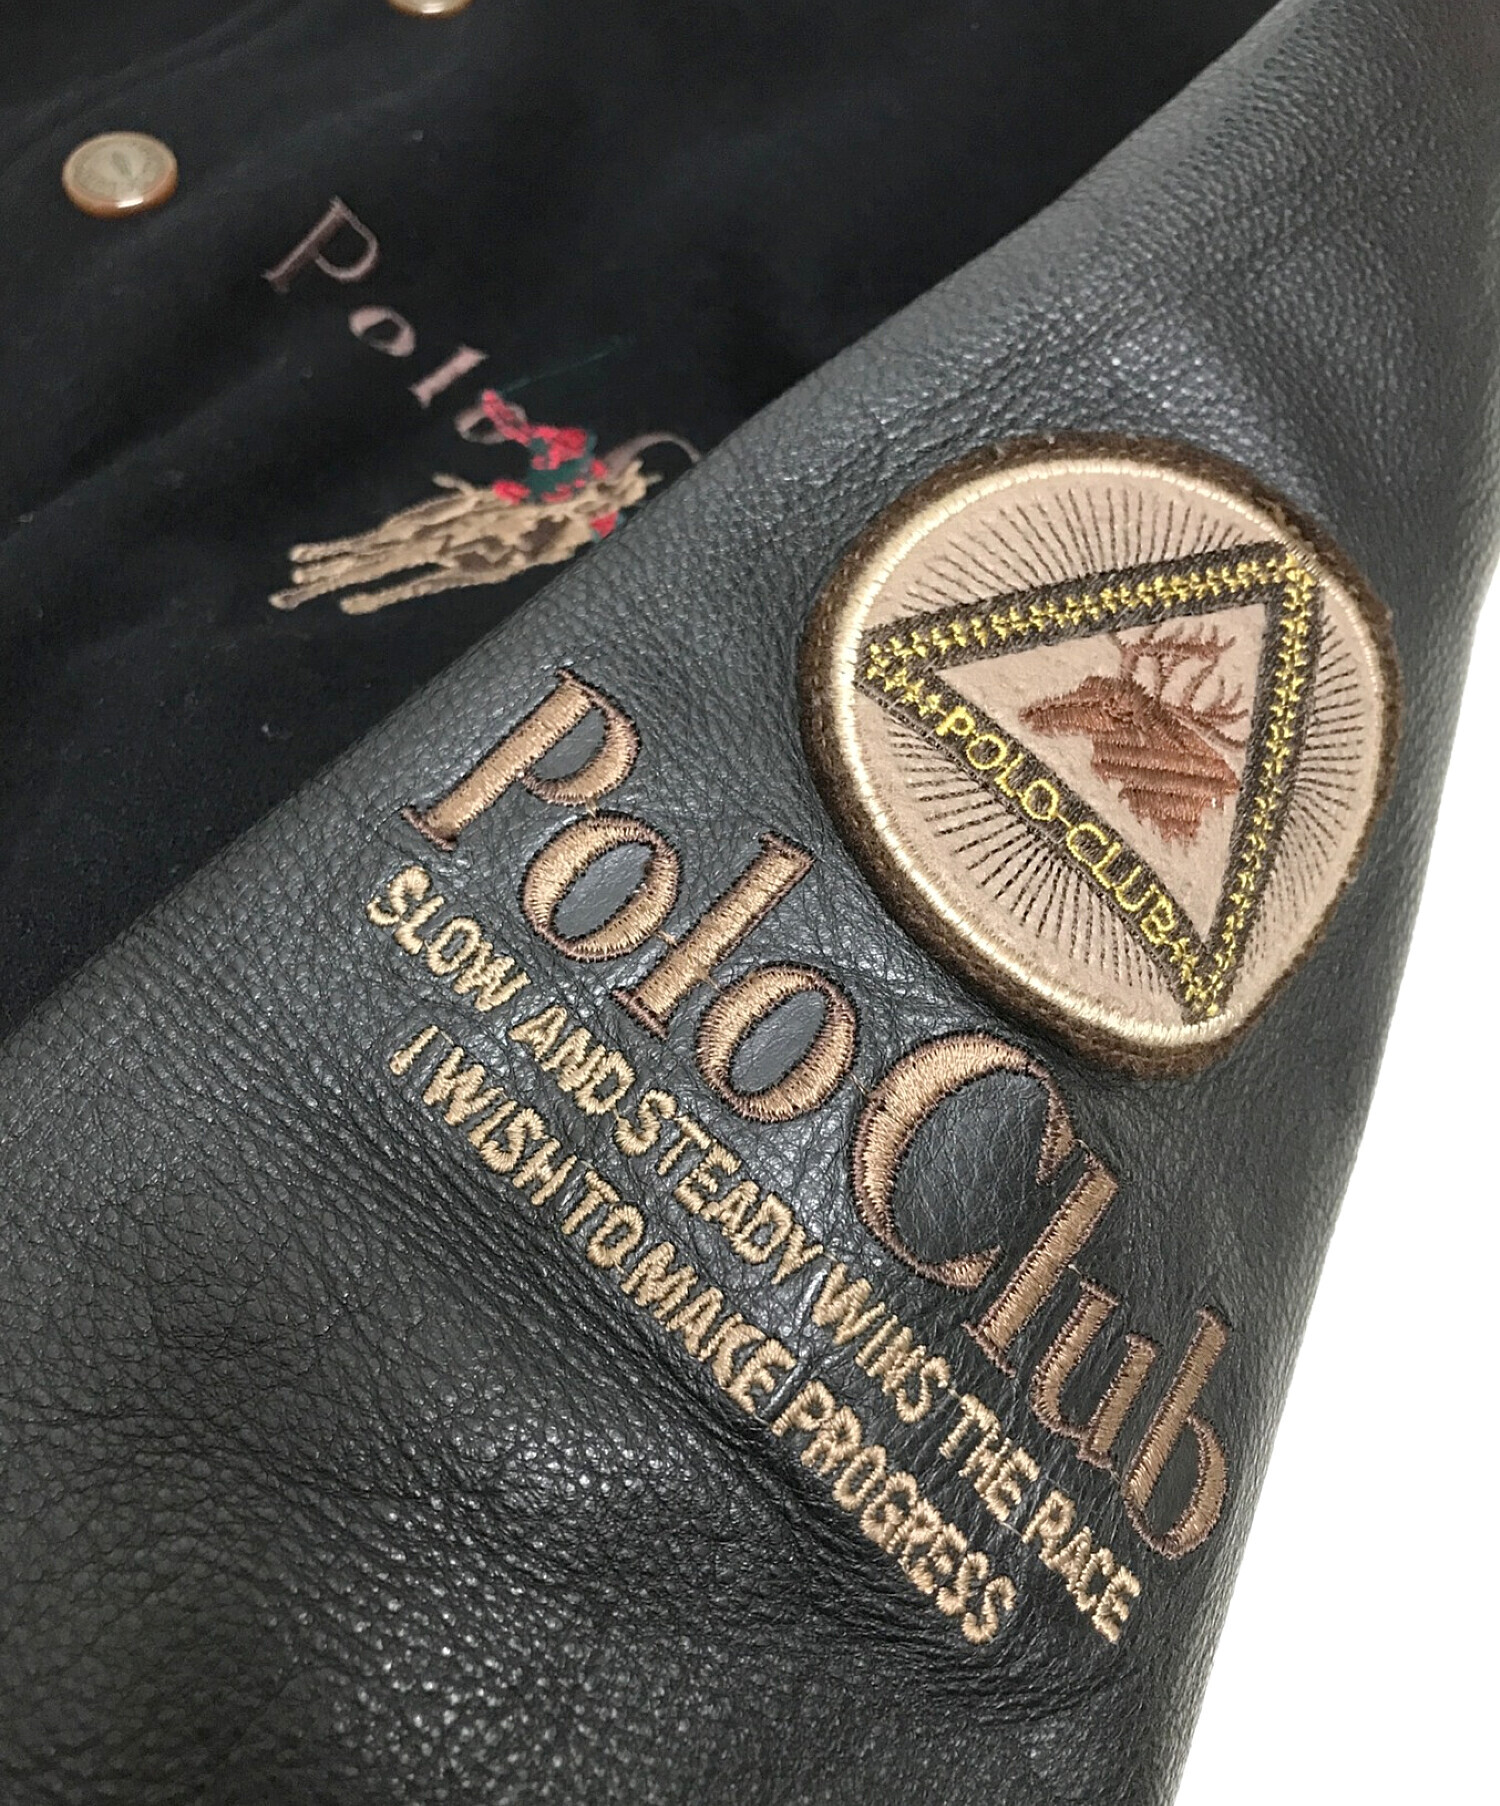 ポロ クラブ Polo Club スタジャン 本革 デカロゴ メンズ ビックロゴ 